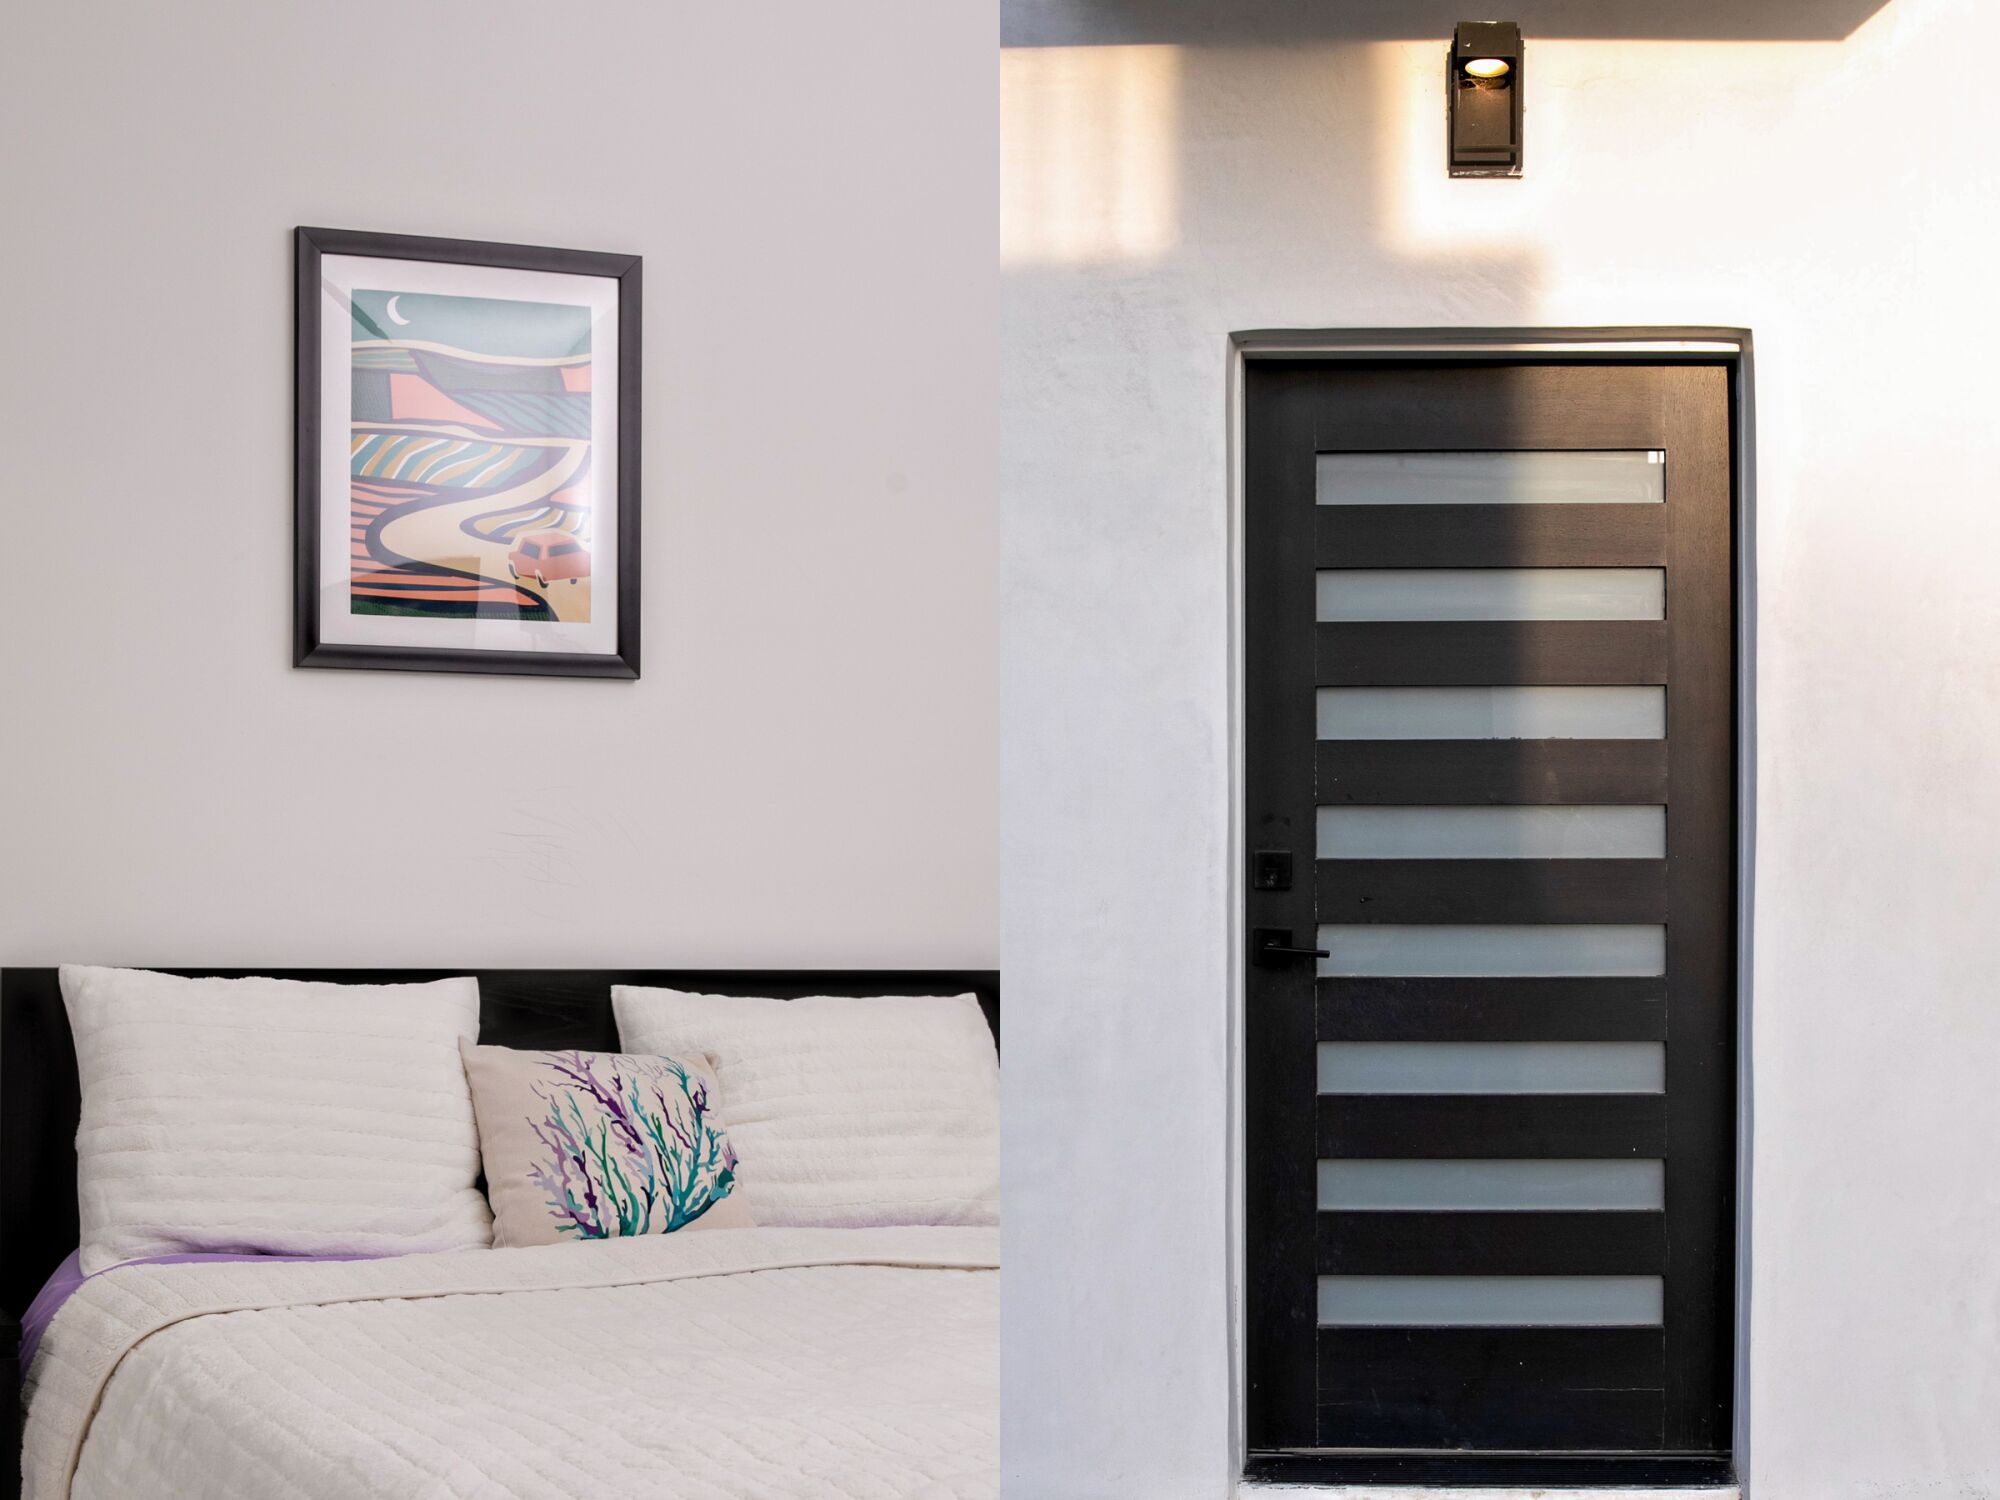 Yan yana iki fotoğraf; biri yatağın üzerinde asılı bir resim çerçevesini, diğeri ise bir evin ön kapısını gösteriyor.